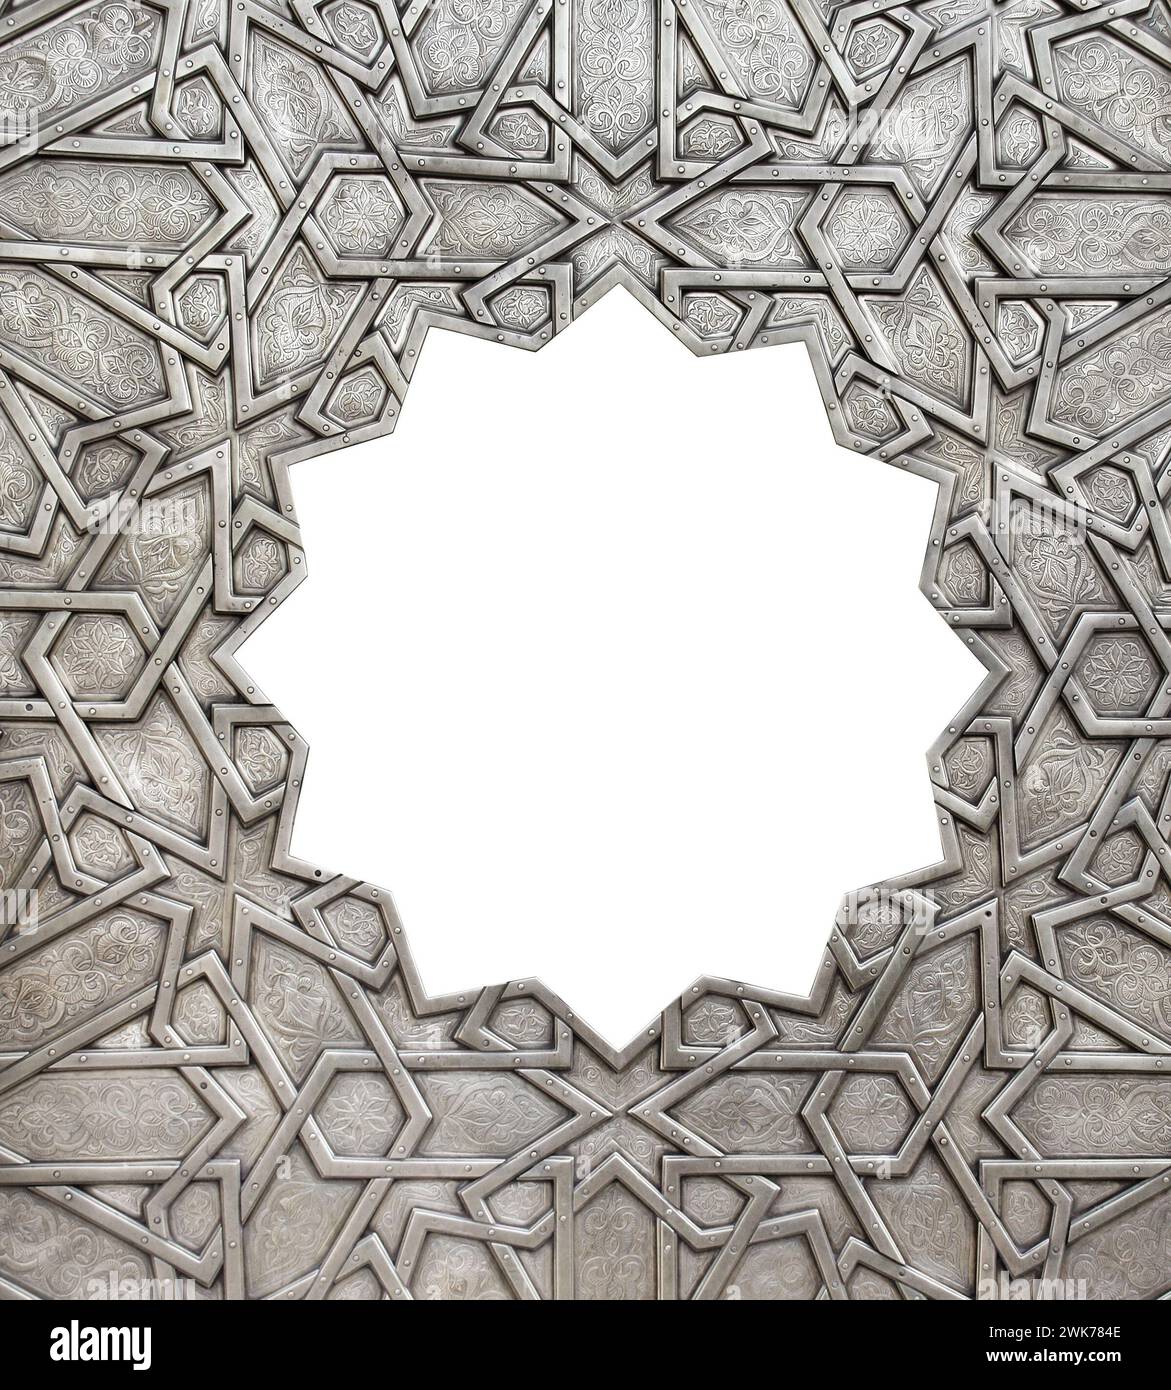 Cadre avec ornement islamique traditionnel. Volet de fenêtre en cuivre avec motif floral marocain antique et national. Ornements orientaux avec esprit artistique Banque D'Images